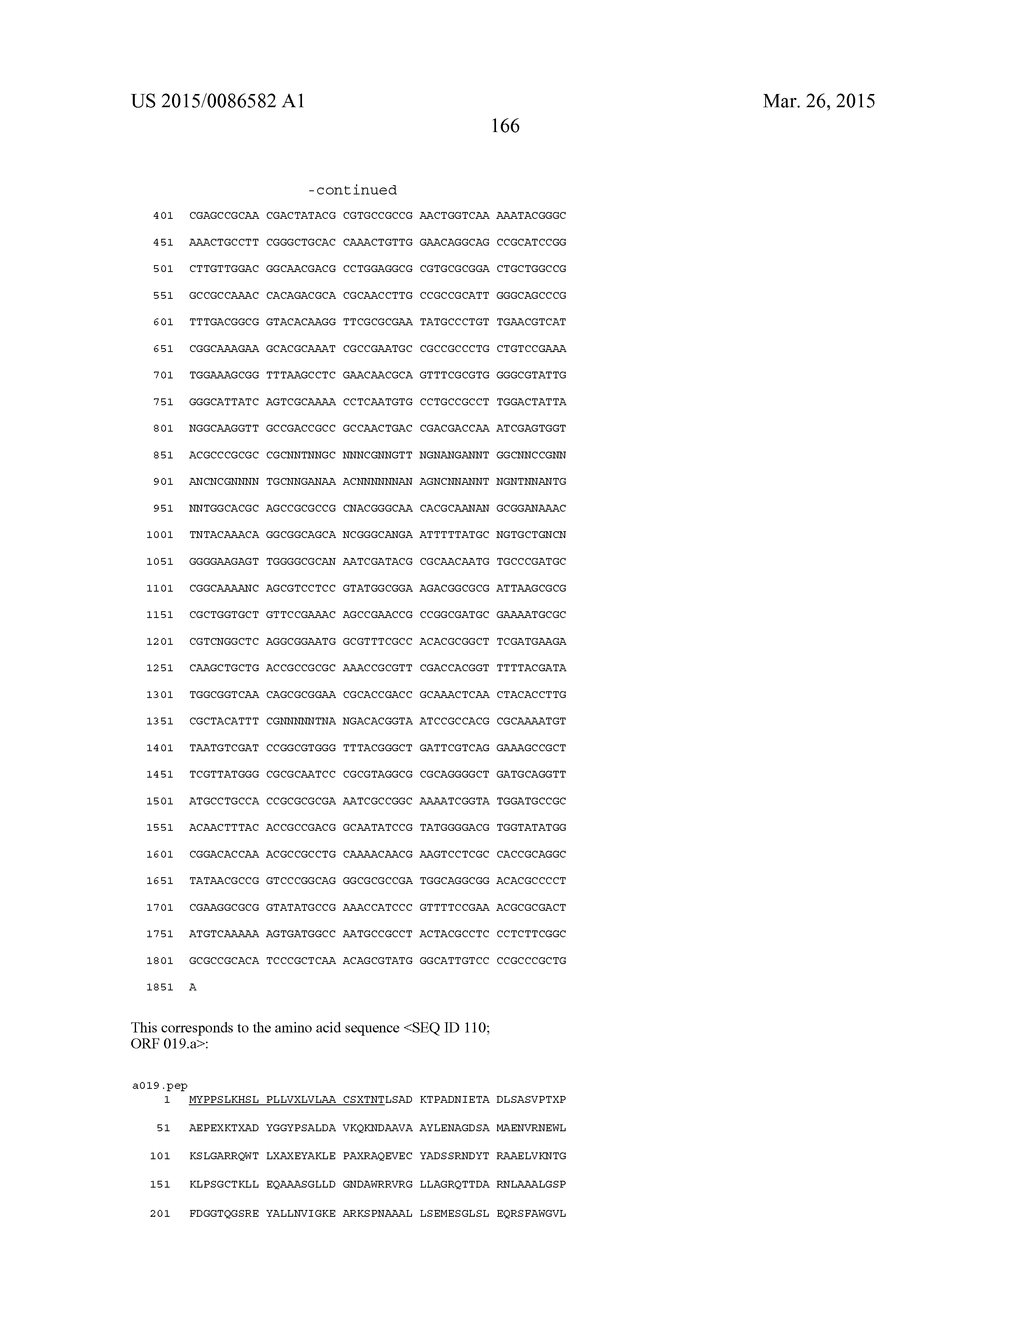 NEISSERIA MENINGITIDIS ANTIGENS AND COMPOSITIONS - diagram, schematic, and image 198